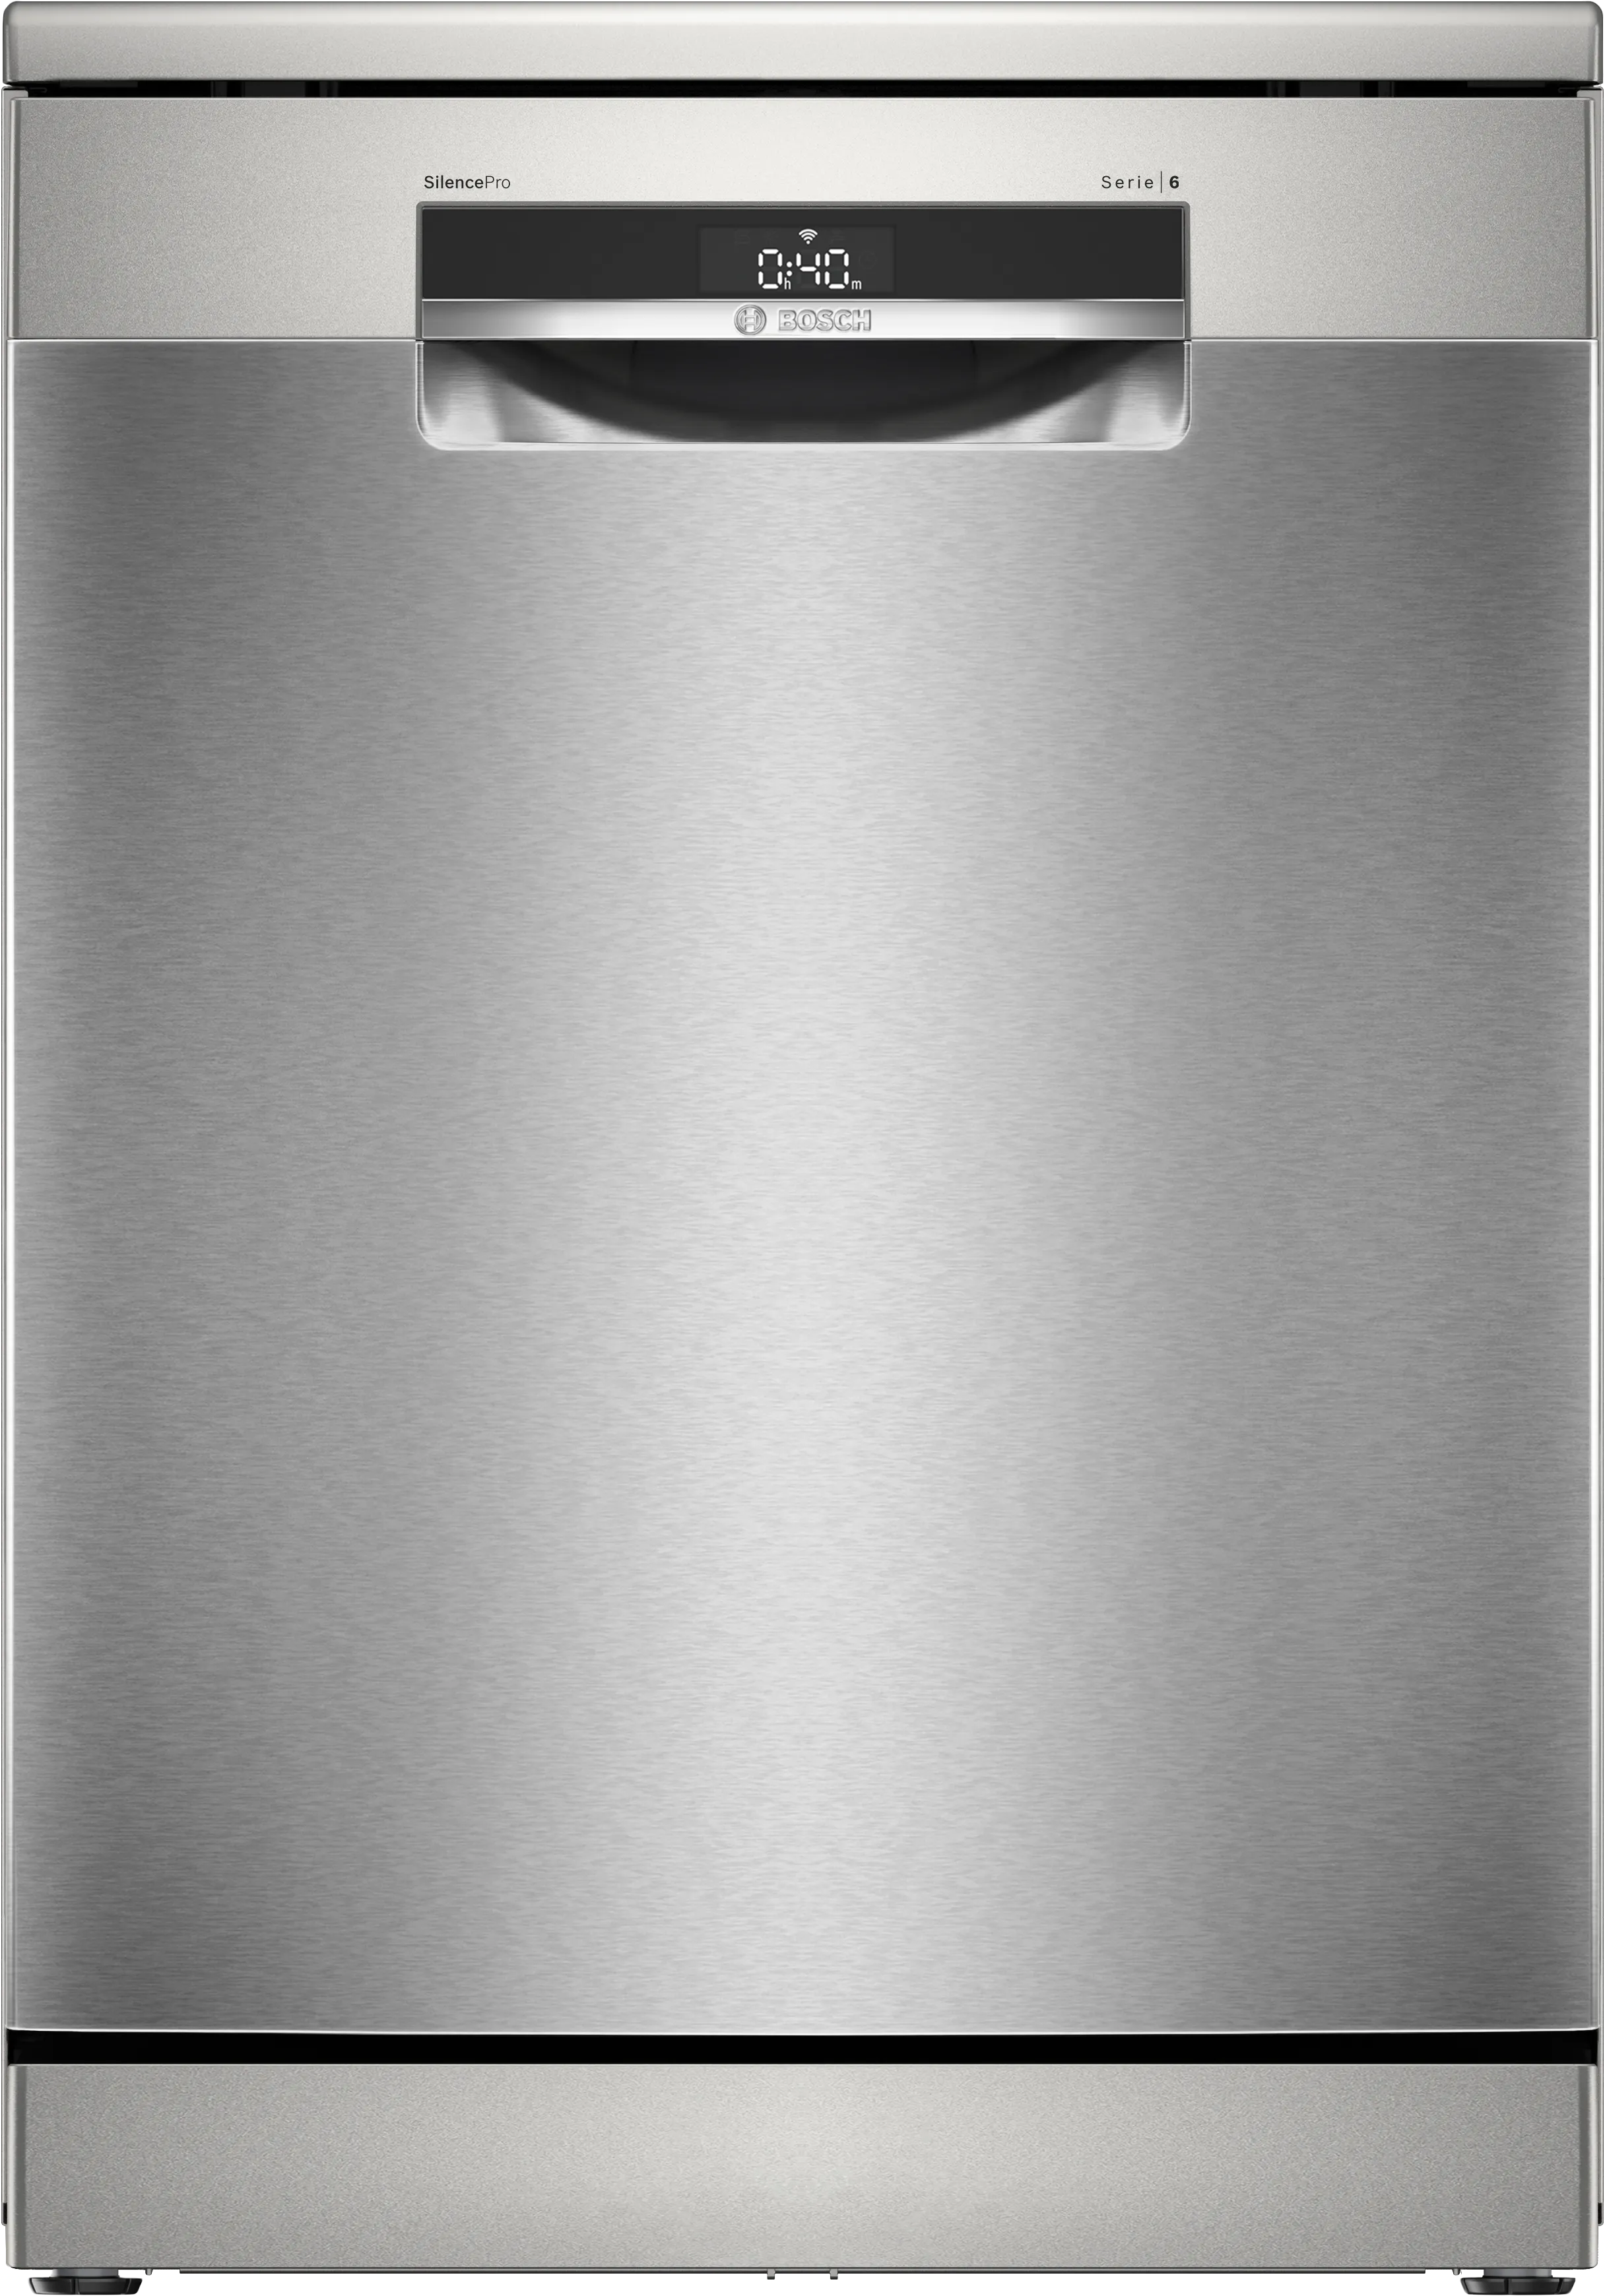 Serija 6 Samostojeća mašina za pranje sudova 60 cm Nerđajući čelik 